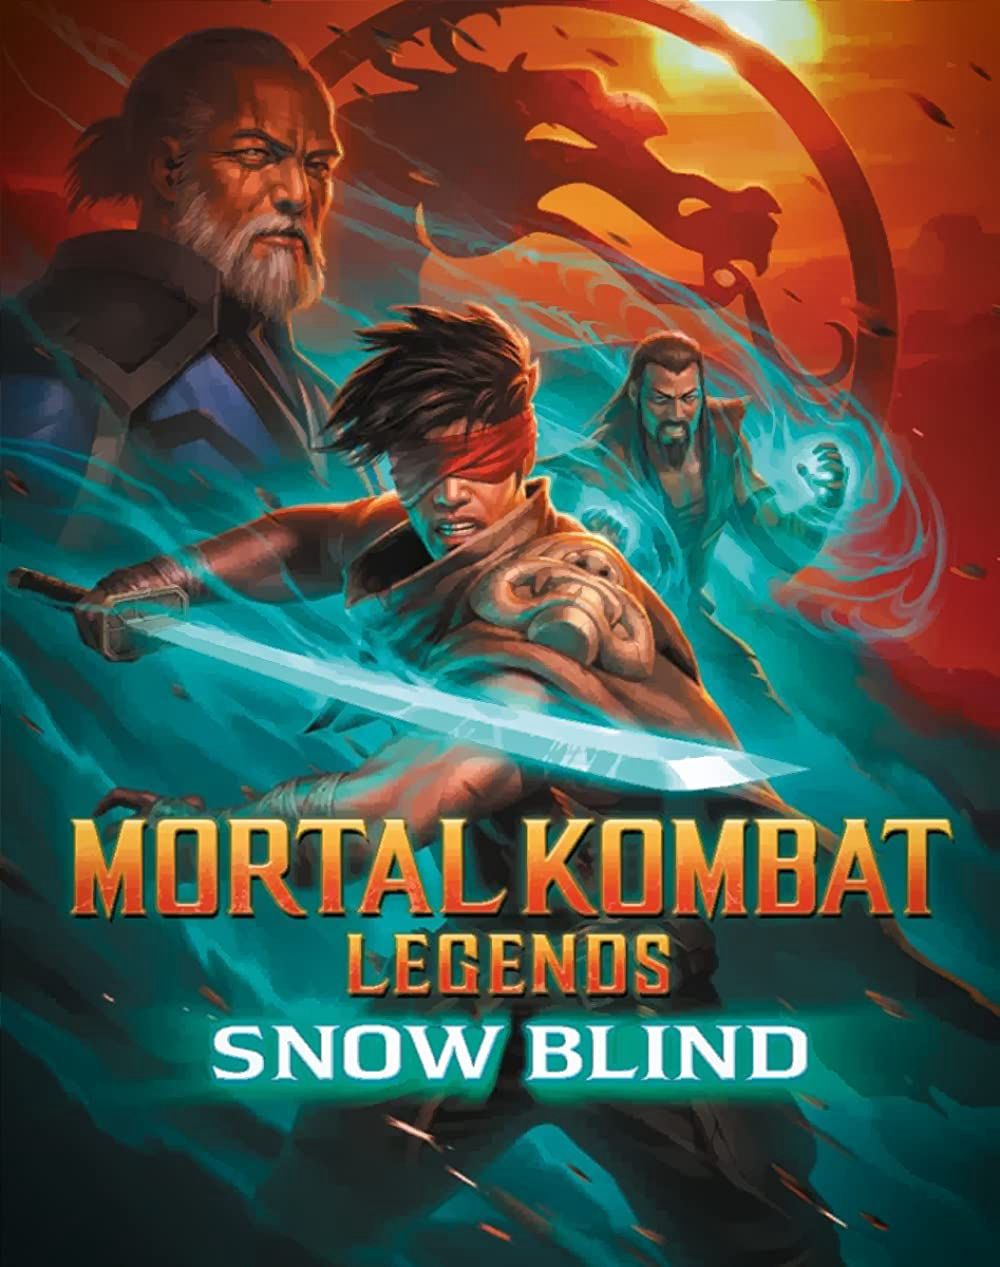 Huyền Thoại Rồng Đen: Tìm Lại Ánh Sáng - Mortal Kombat Legends: Snow Blind